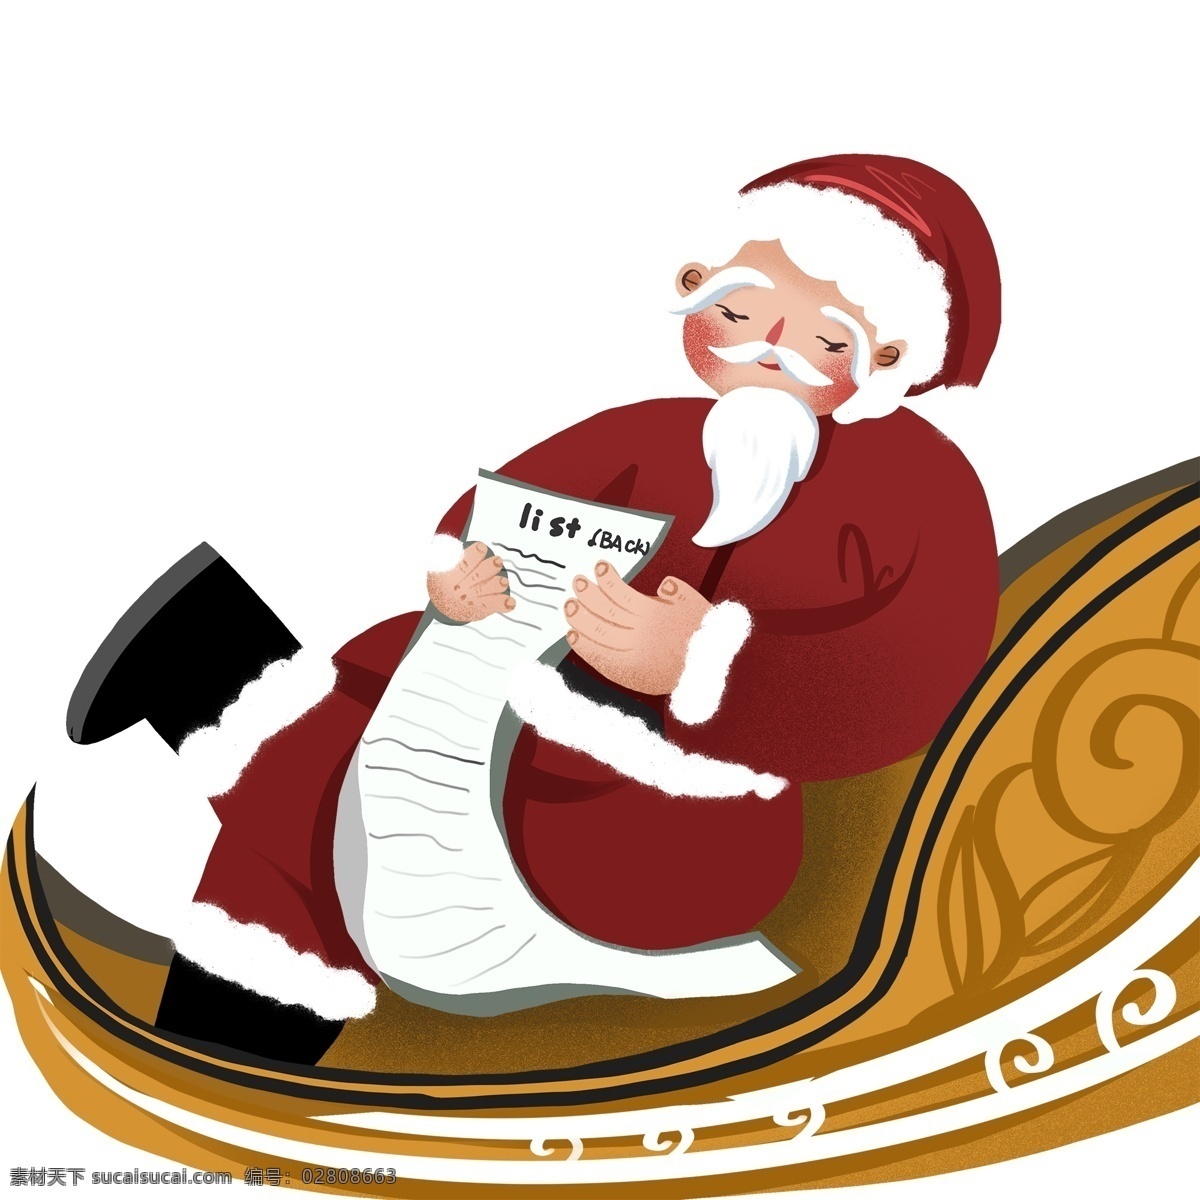 翘 二郎腿 看着 圣诞 礼物 清单 圣诞老人 手绘 创意 复古 卡通 礼物清单 插画 圣诞节素材